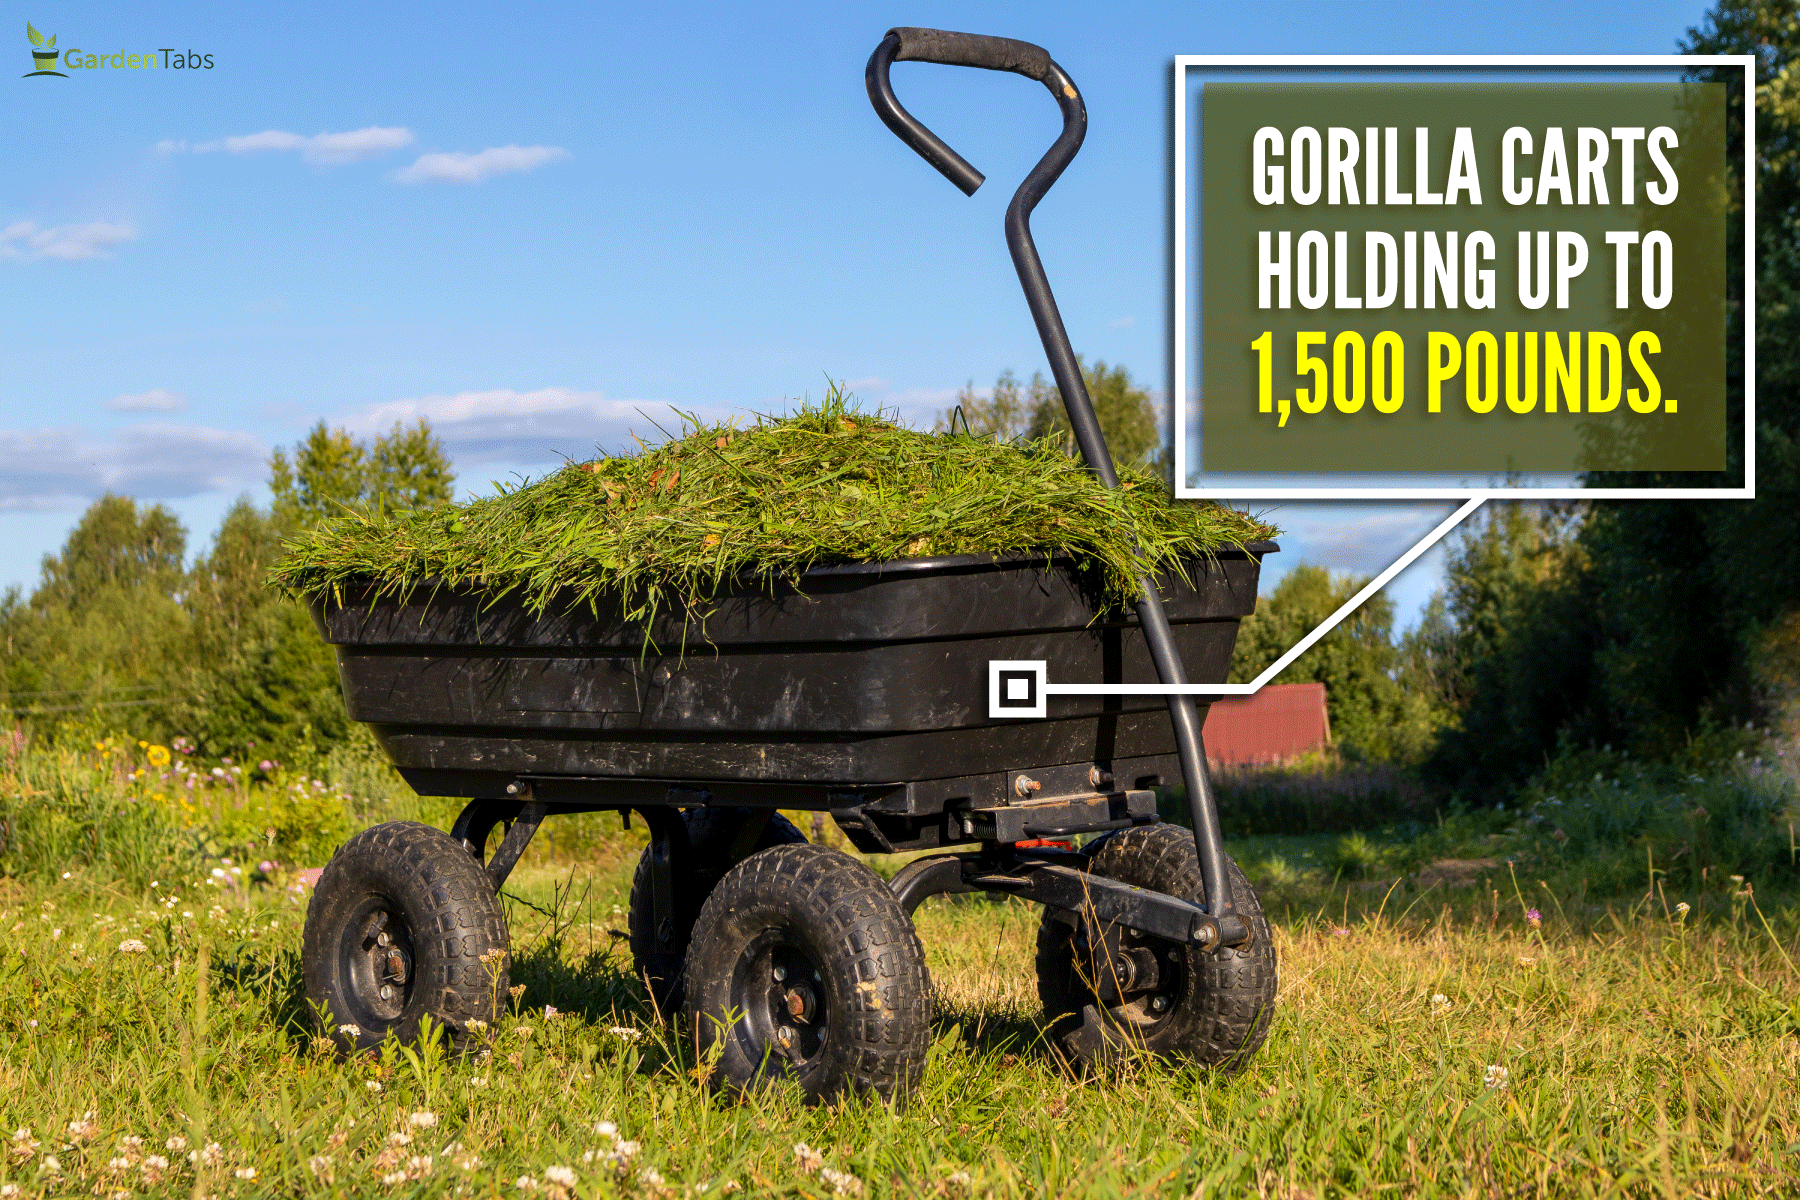 garden cart on four wheels cut grass heavy duty cart on farm, How Much Weight Can A Gorilla Cart Hold?